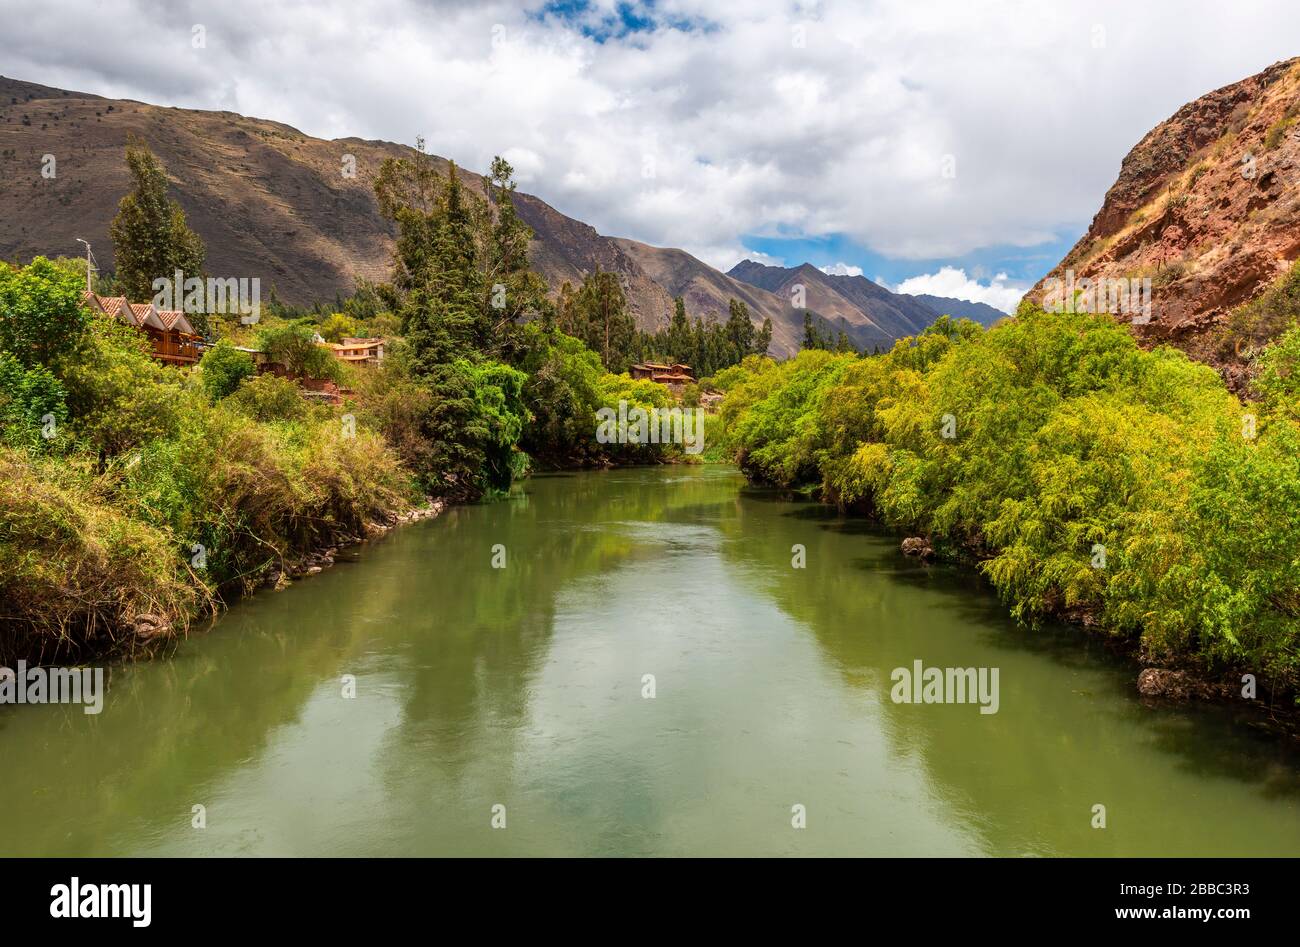 La majestueuse rivière Urubamba dans la vallée sacrée de l'Inca, province de Cusco, Pérou. Banque D'Images